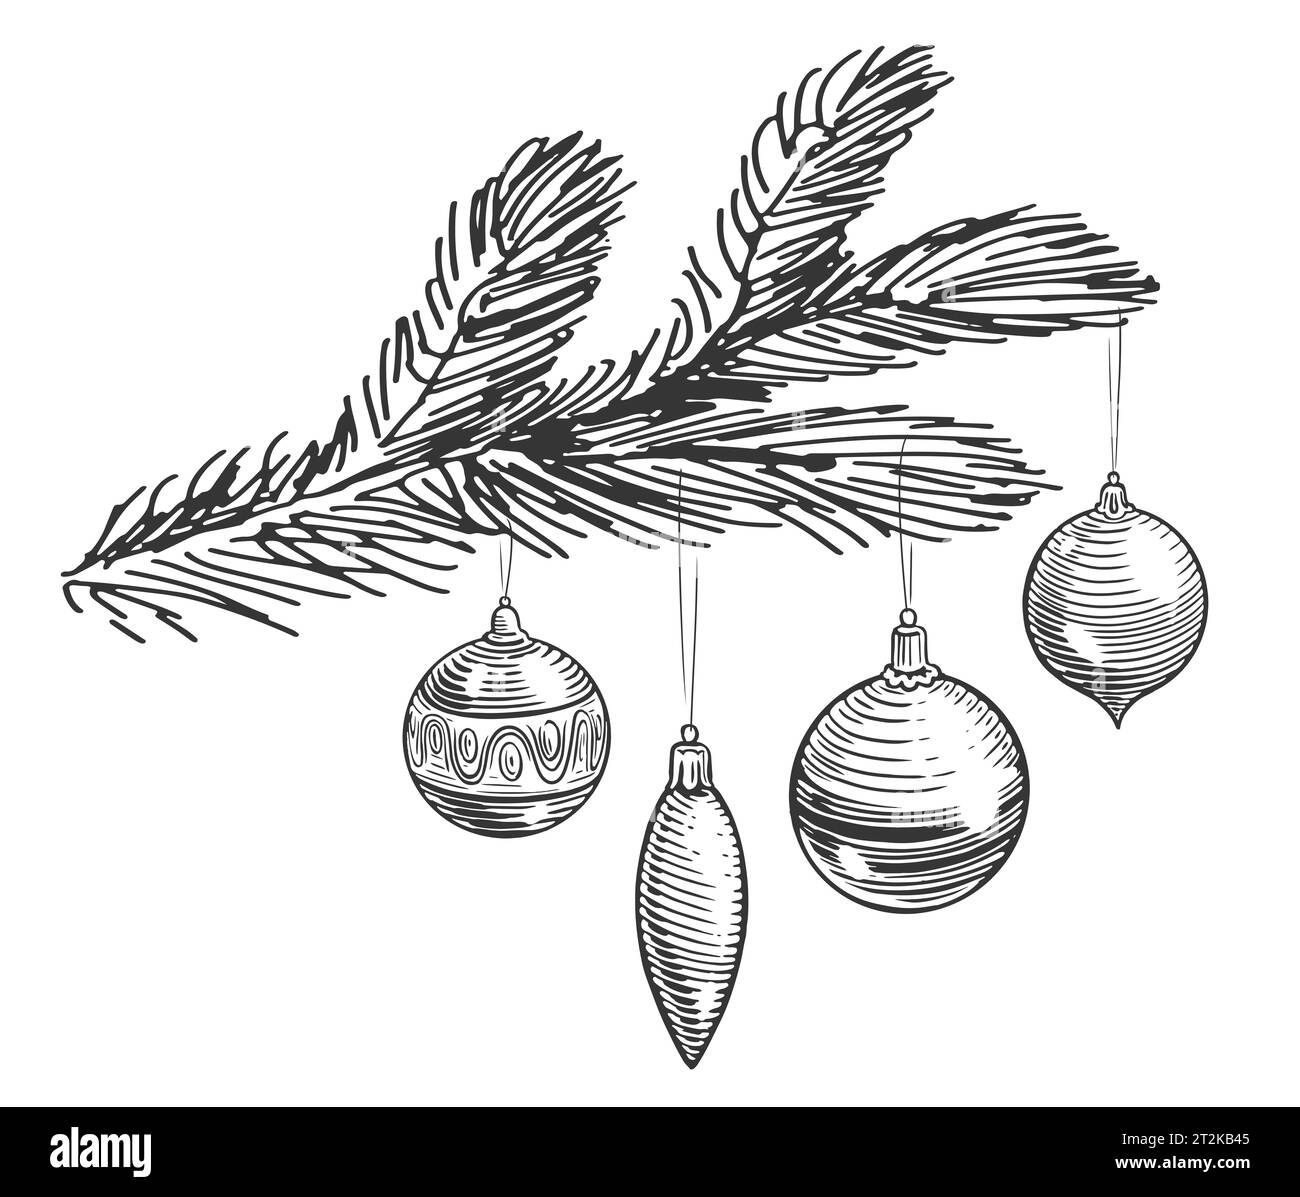 Deko-Kugeln am Tannenzweig. Frohe Weihnachten und frohes neues Jahr. Handgezeichnete Illustration im Skizzenstil Stockfoto